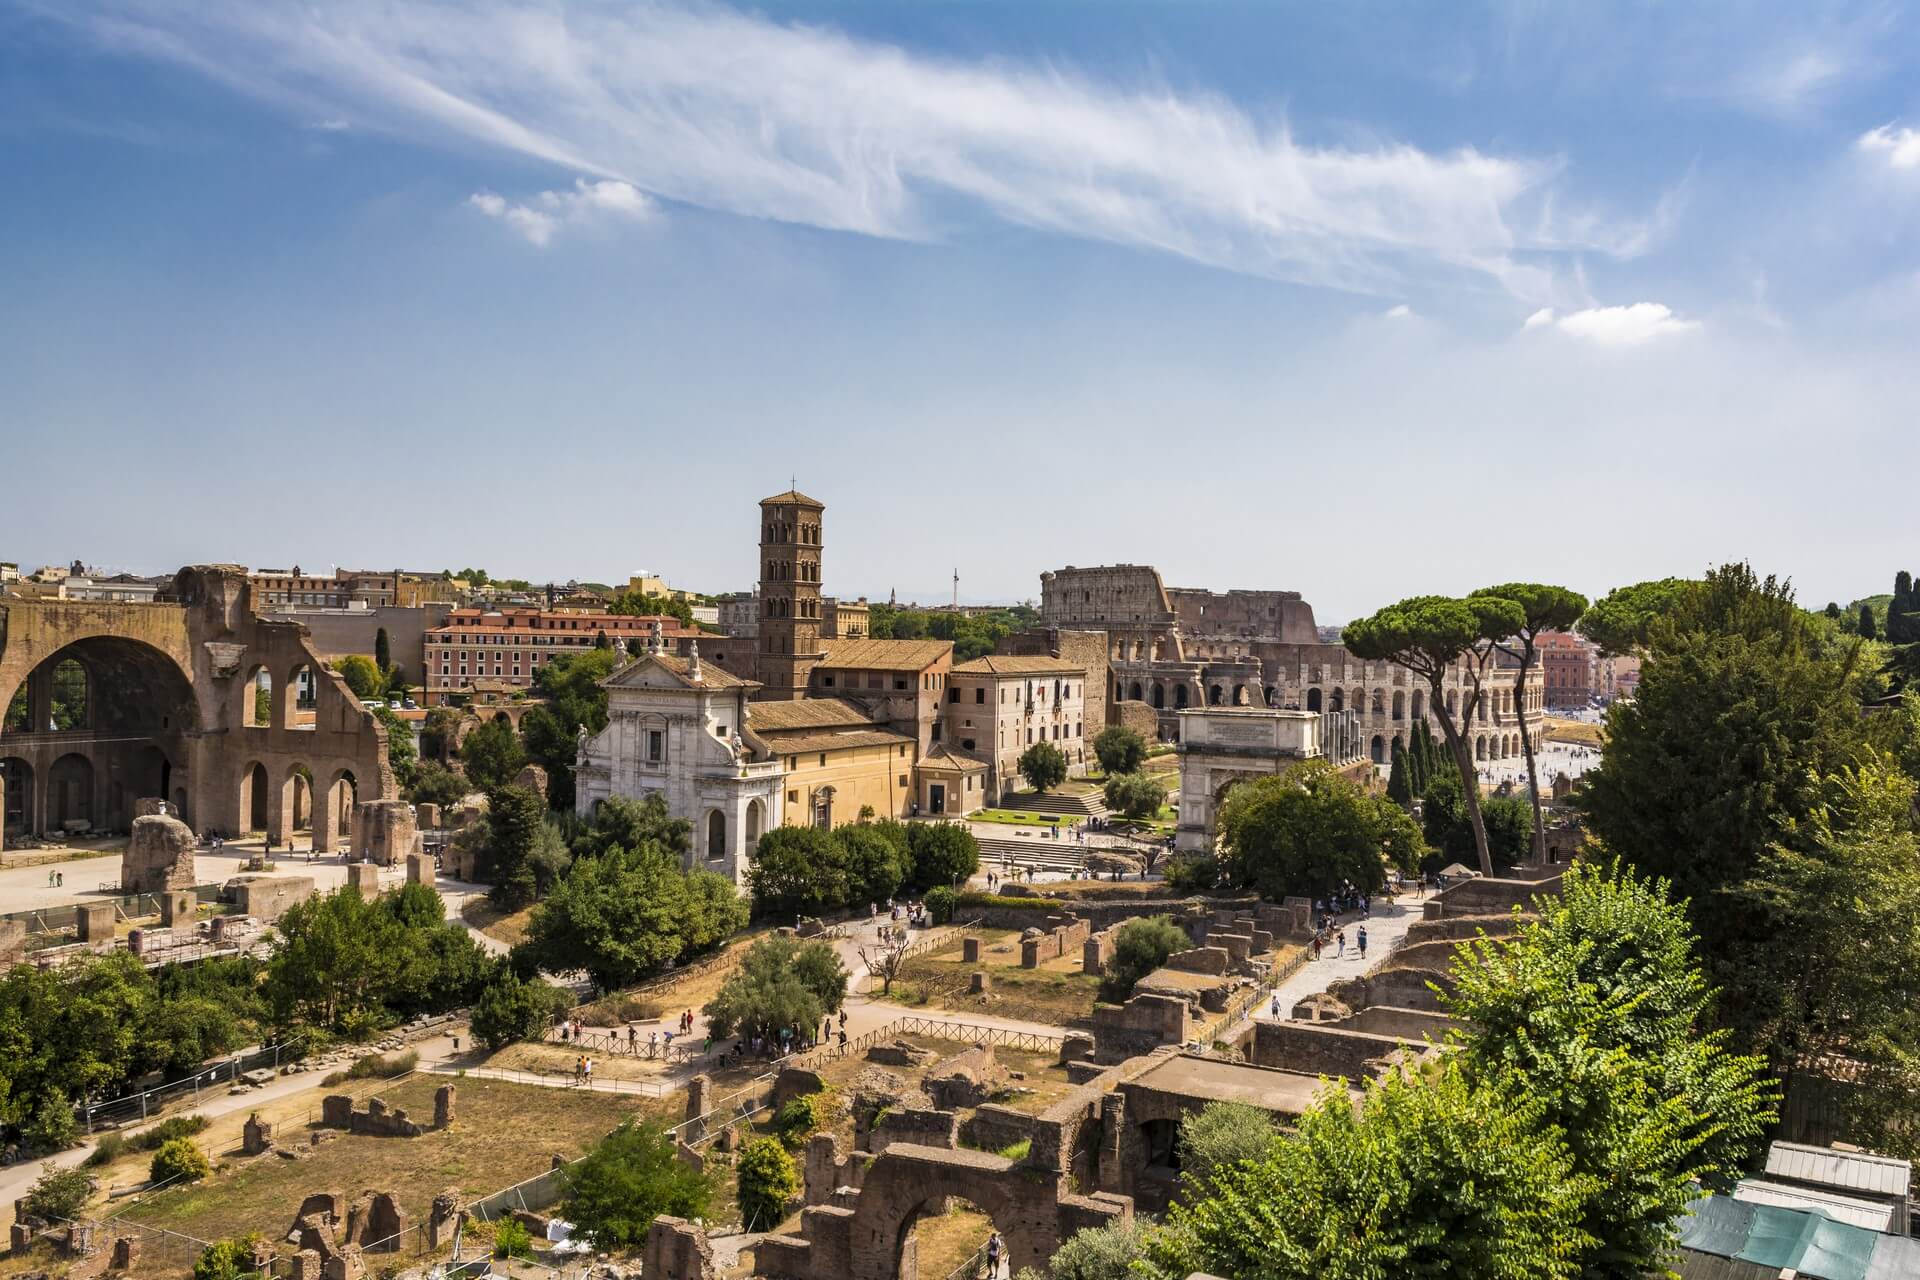 Vista panoramica del Colosseo (Colosseo) e del Foro Romano dal colle Palantino, Roma, Italia. Il Foro Romano è una delle principali attrazioni turistiche di Roma.